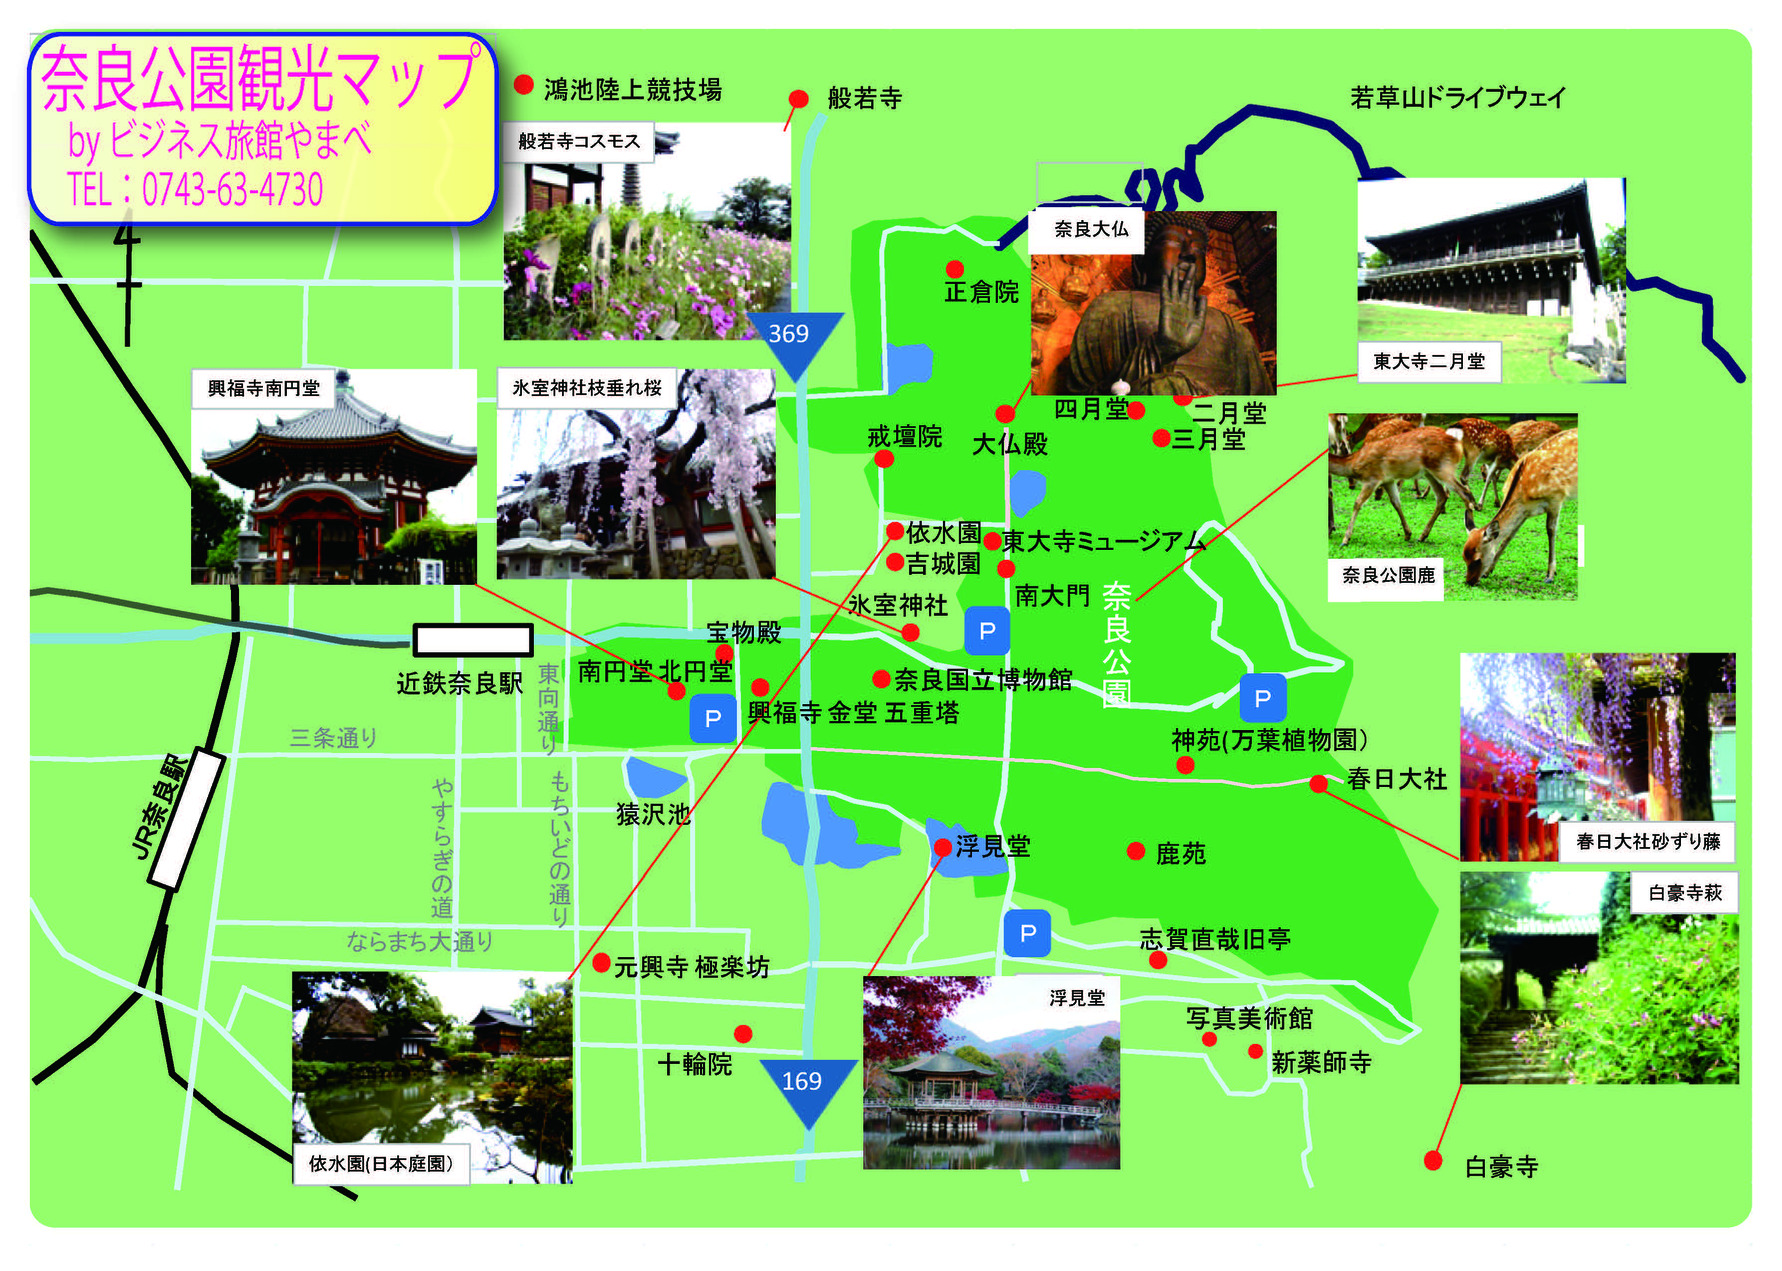 ビジネス旅館 やまべ 奈良公園 観光スポット 楽天トラベル